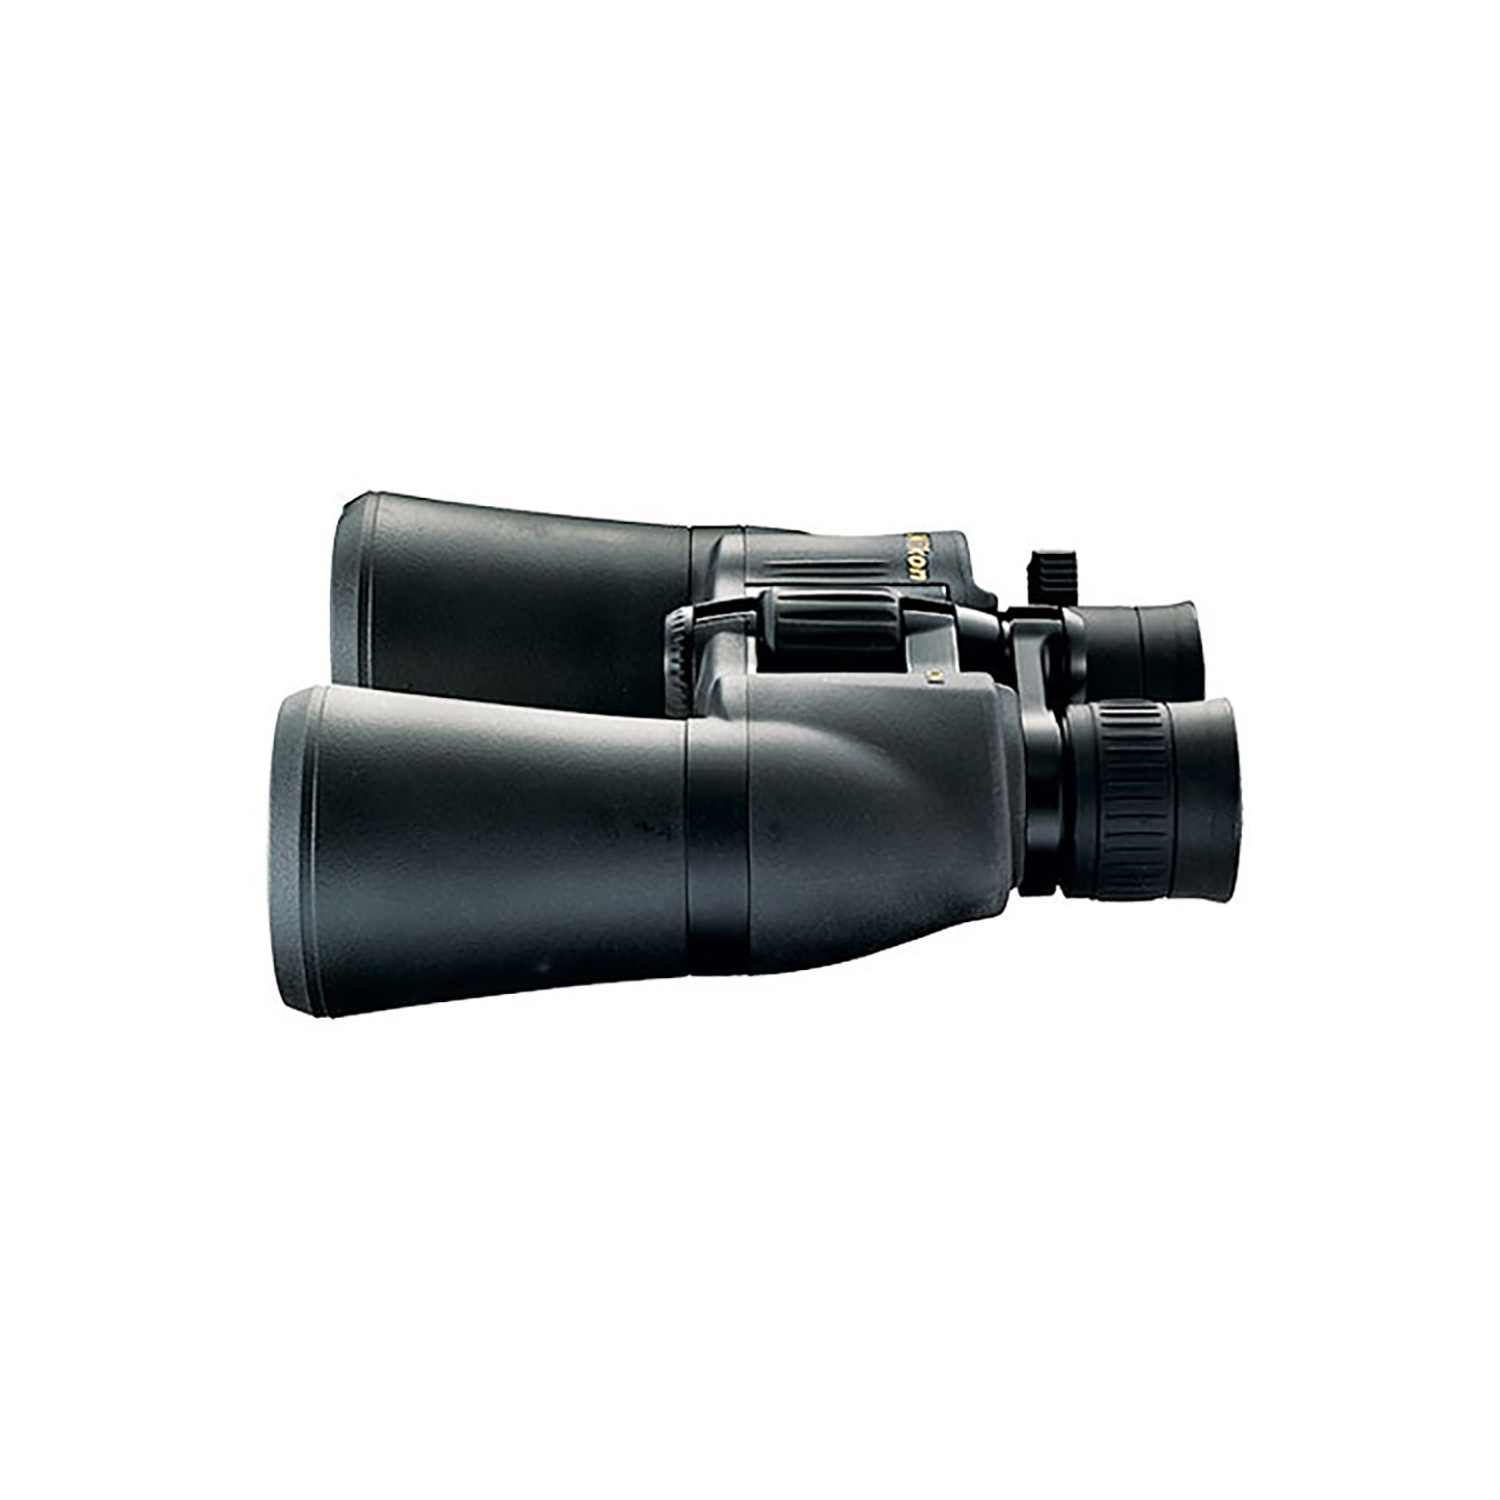 Nikon Aculon A211 Binoculars - 10-22x50